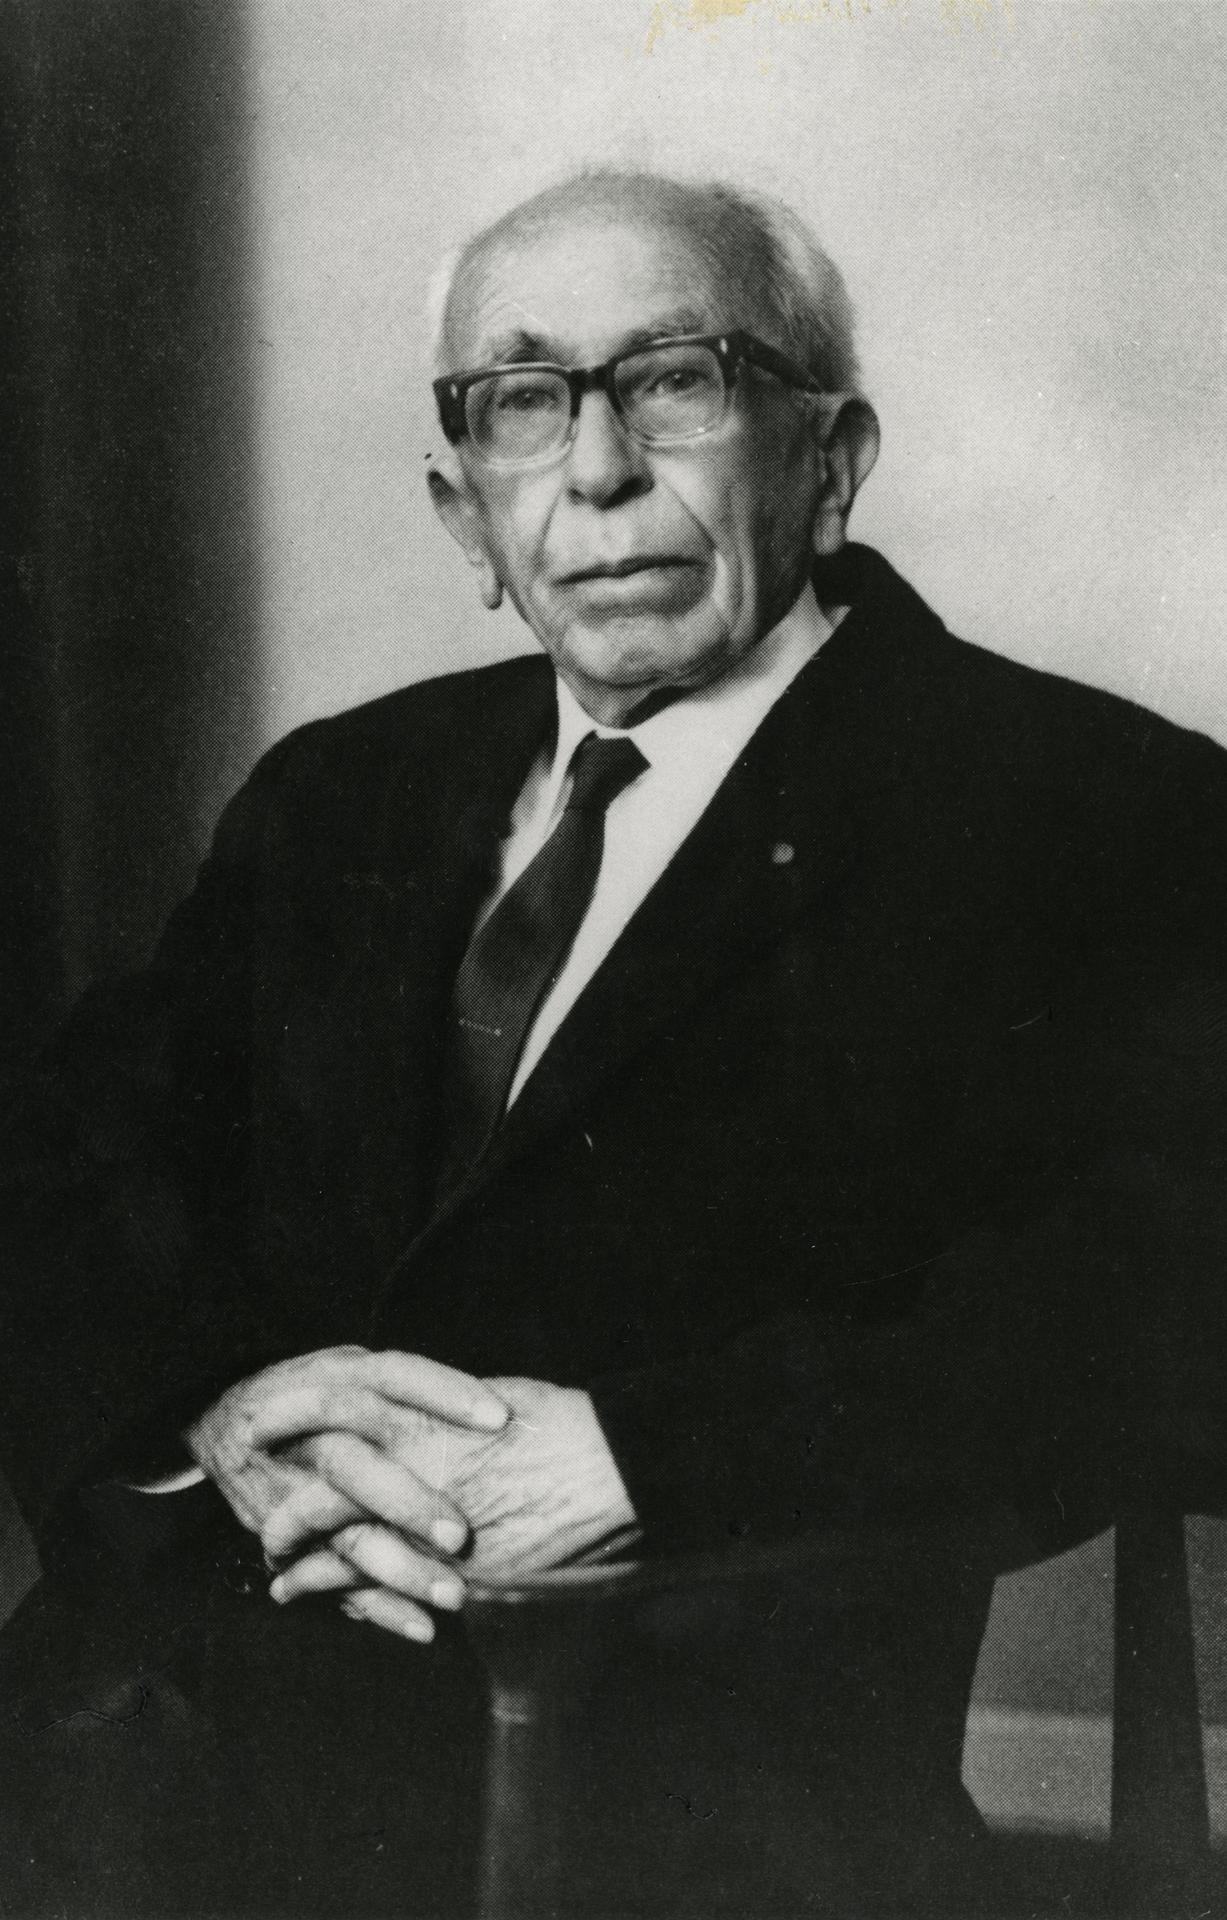 Prof Alan R. Chisholm